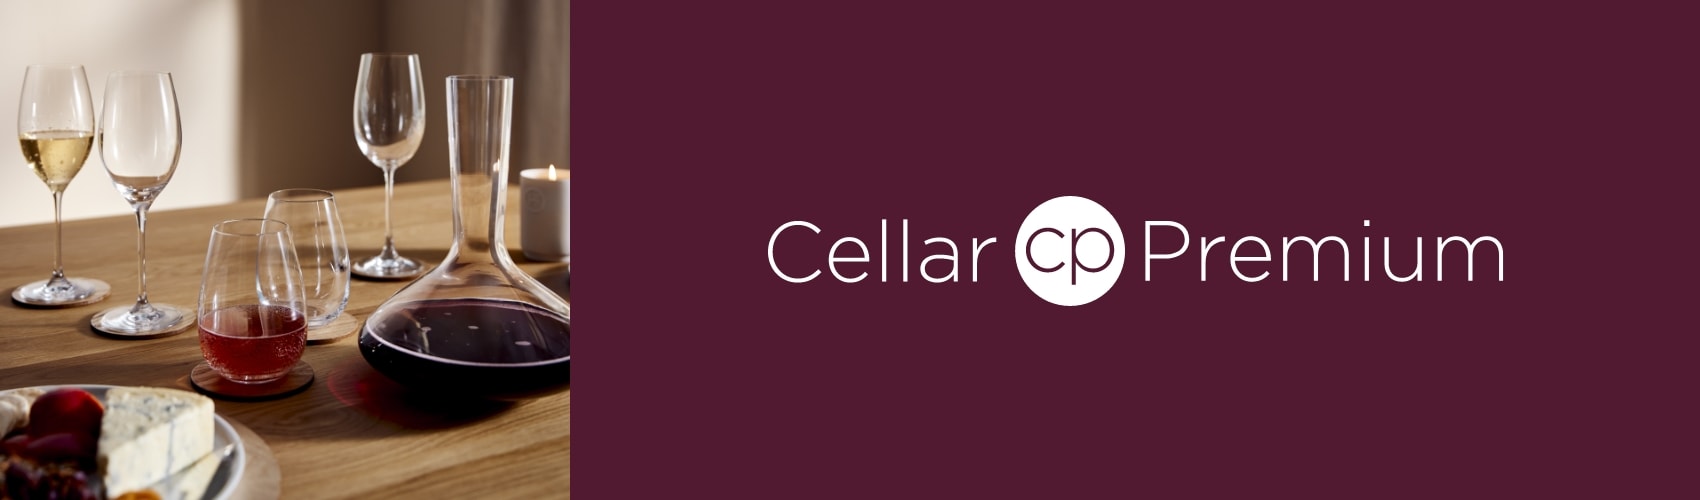 Cellar Premium